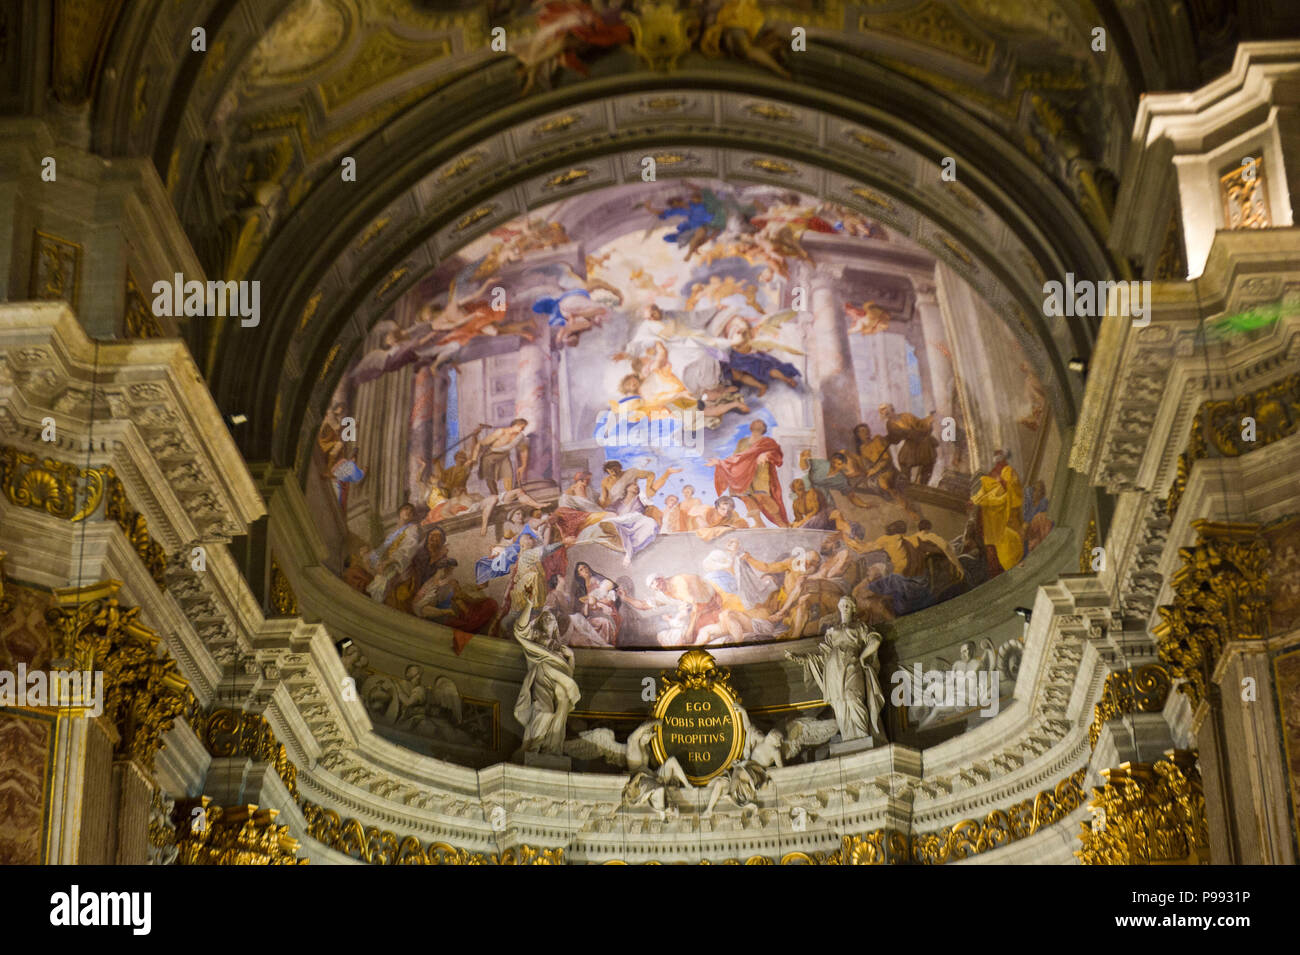 Europa. Italien, Rom, barocke Kirche S. Ignazio, mit Fresken von Andrea Pozzo und das Grab des heiligen Luigi Gonzaga. Stockfoto